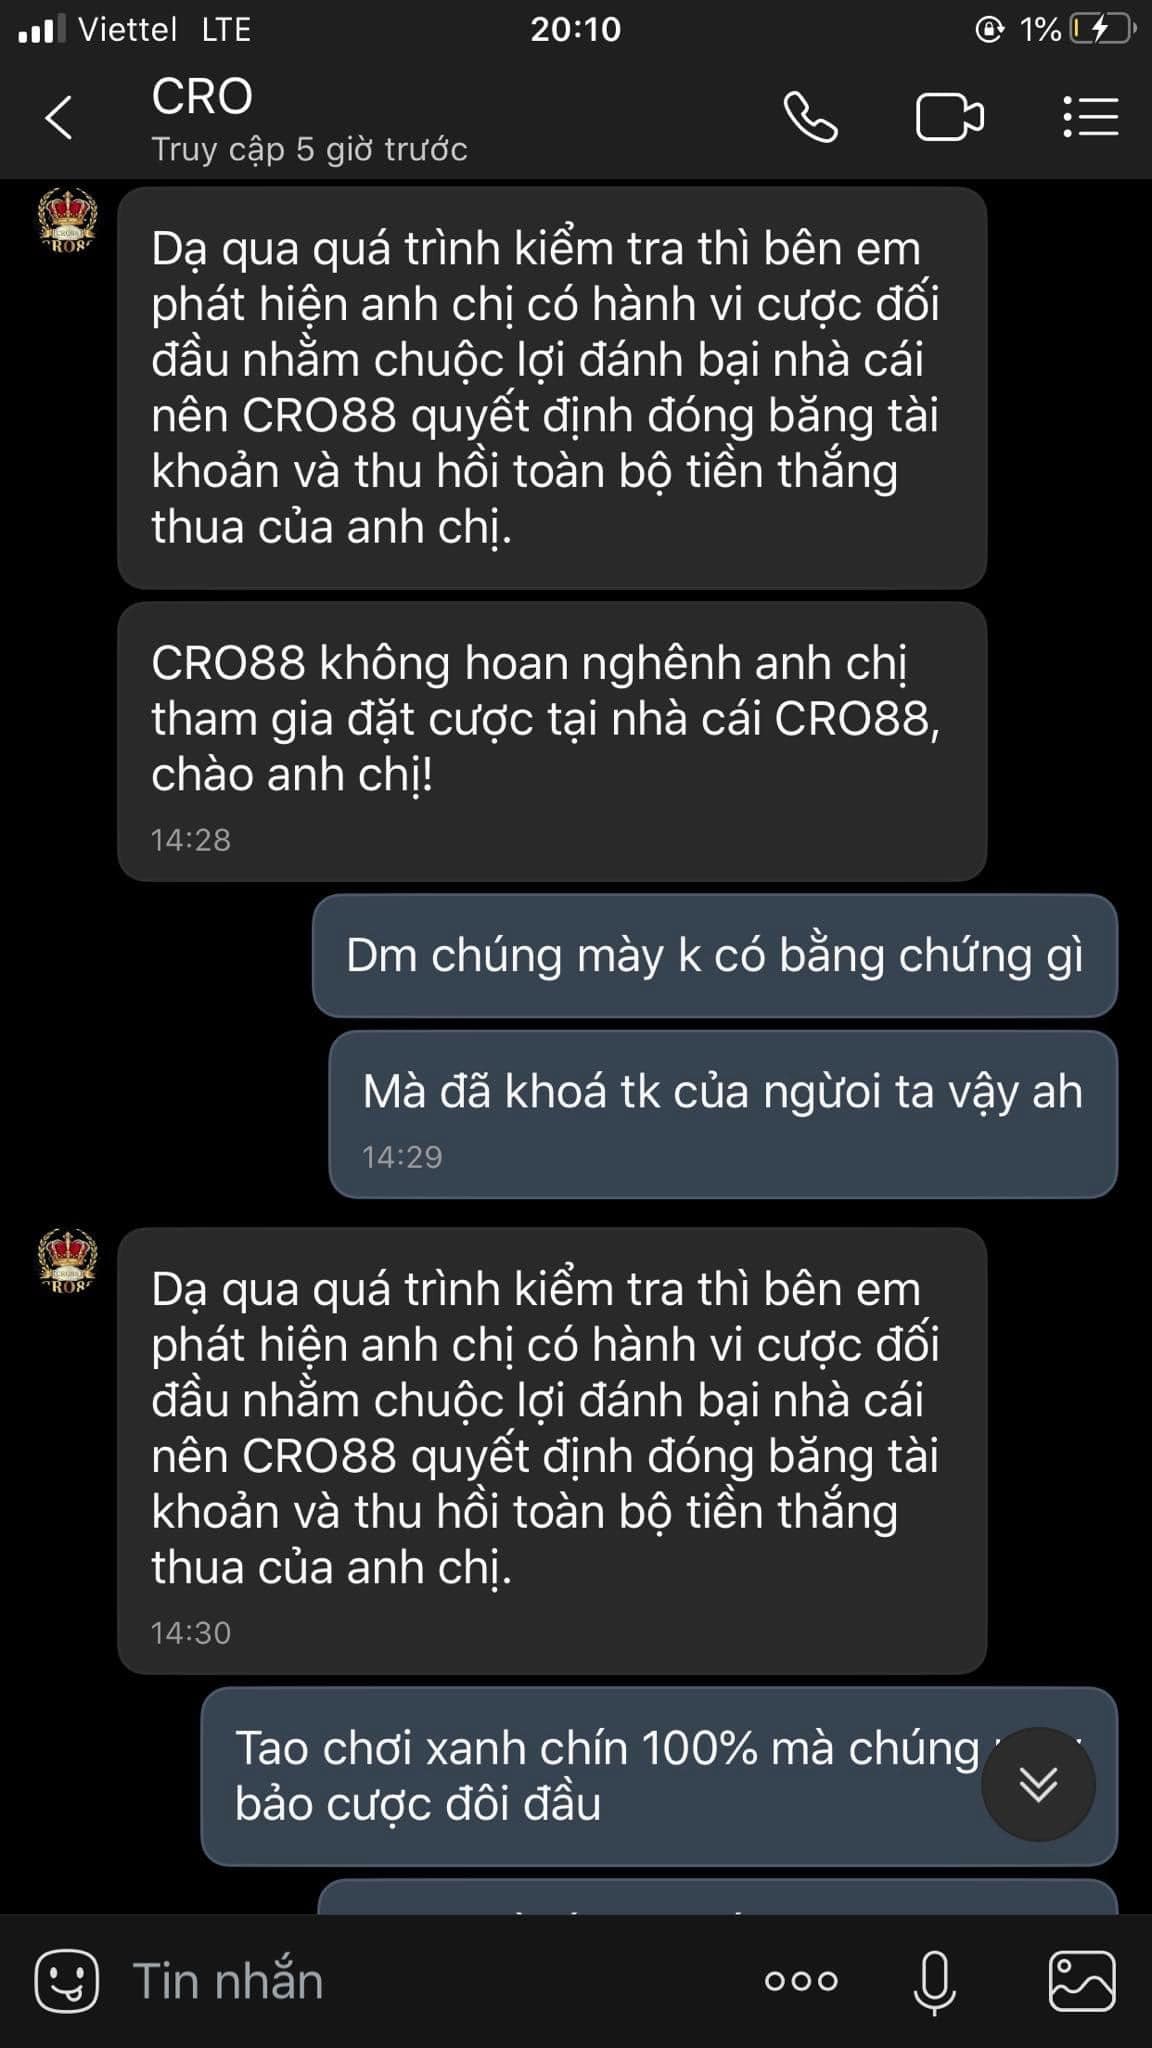 Cro88 đối thoại với khách hàng bị lừa đảo